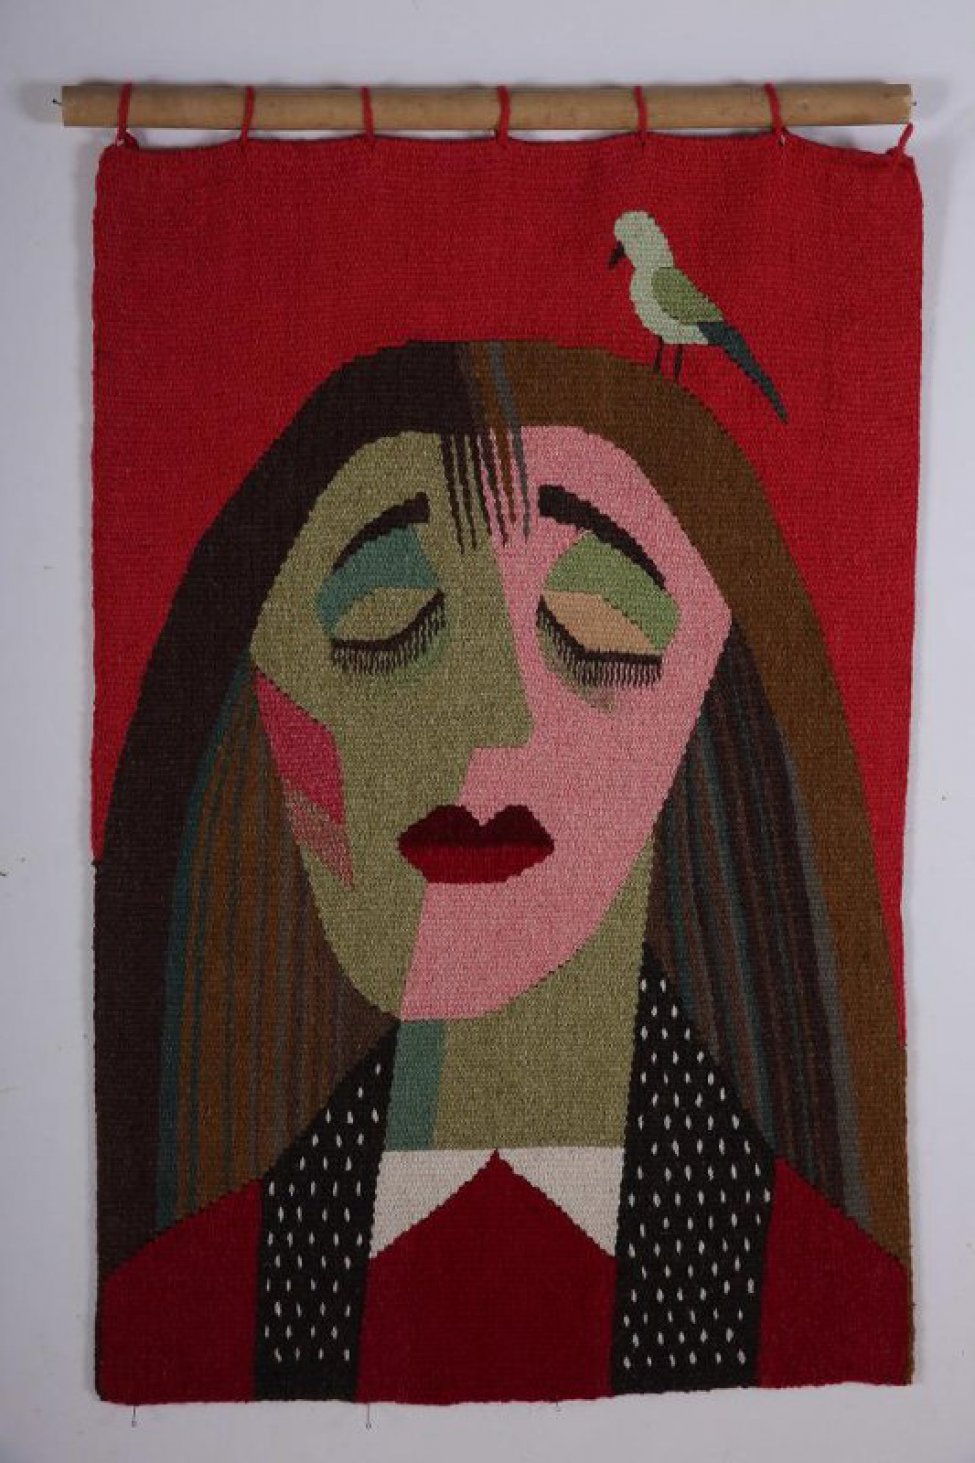 На красном фоне погрудное стилизованное изображение женщины с темными волосами и маленькой птичкой на голове